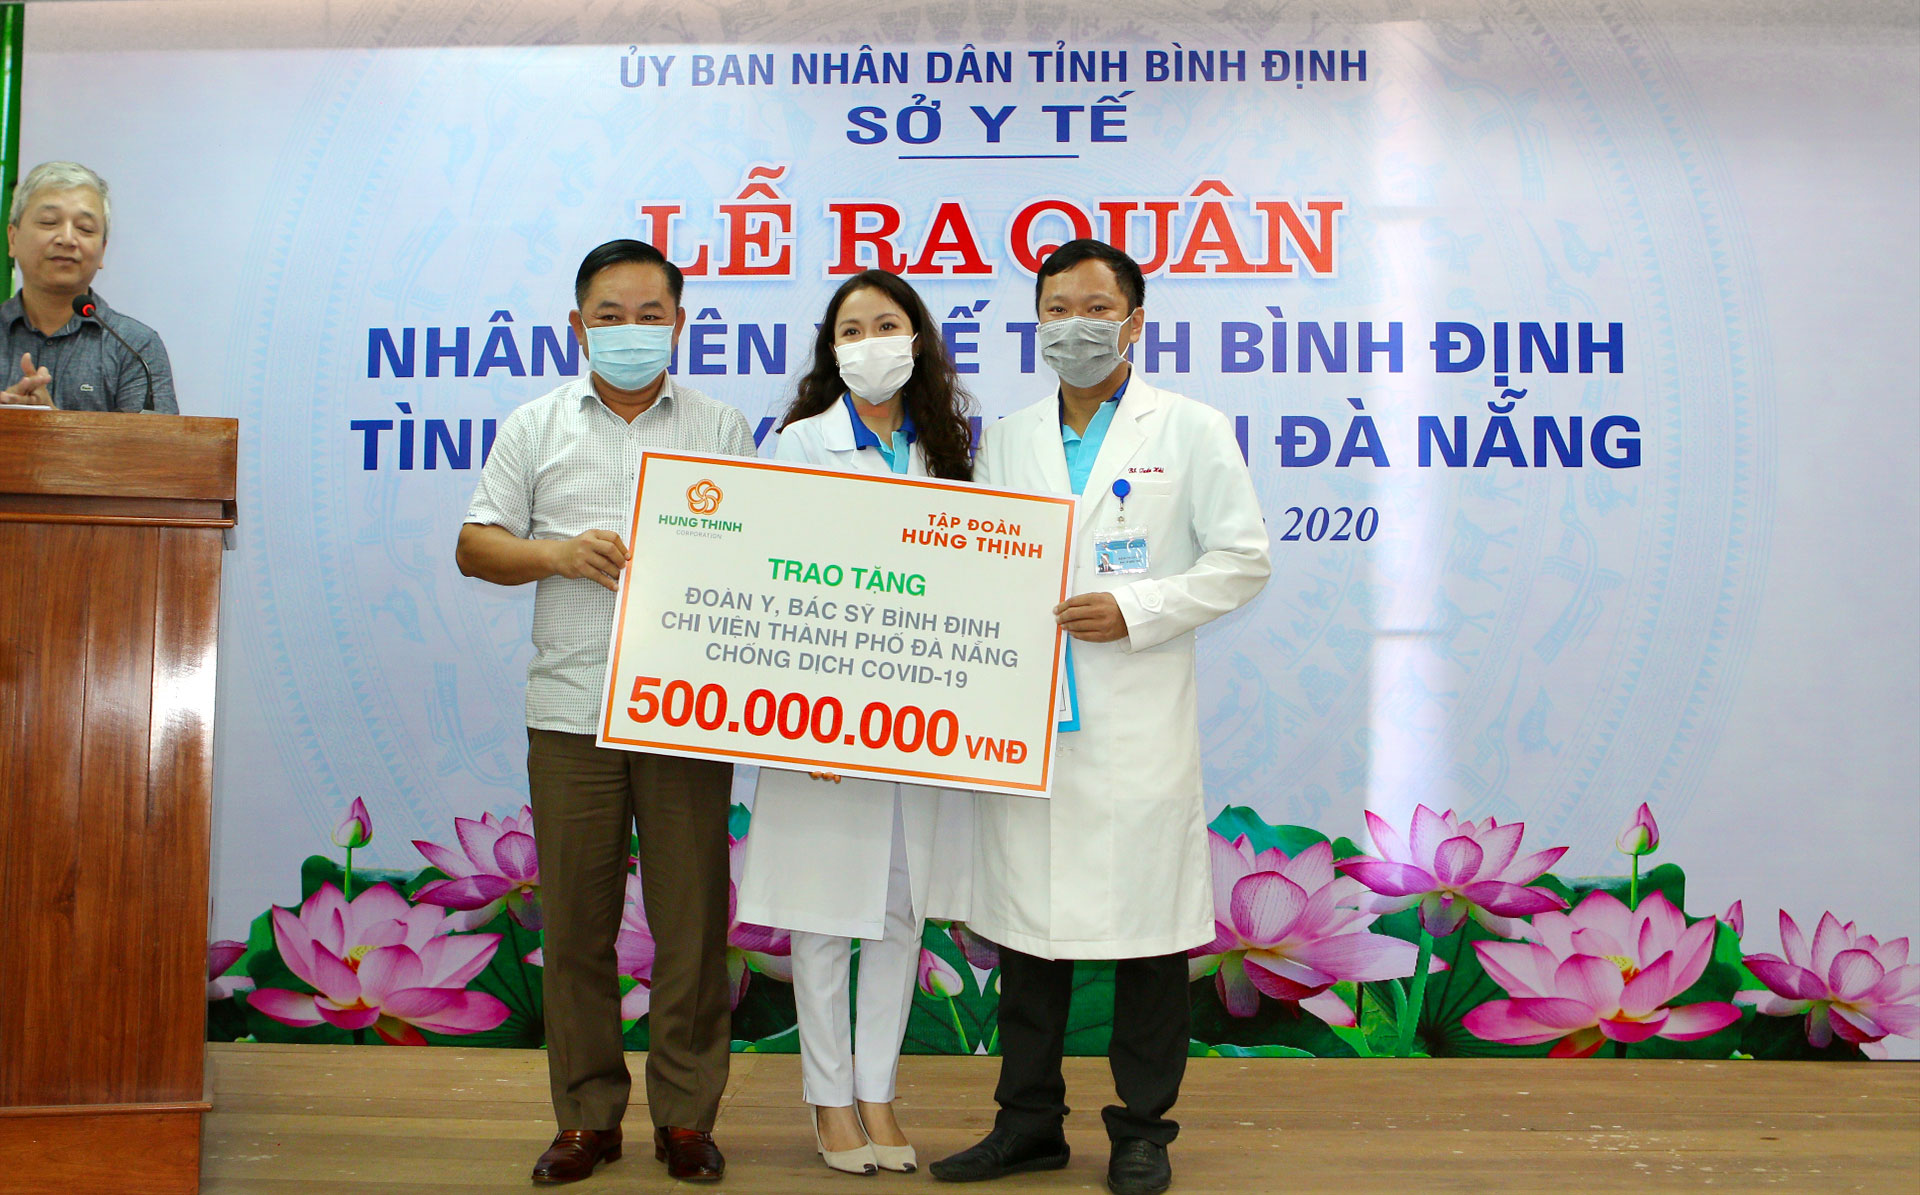 Tập đoàn Hưng Thịnh trao tặng 500 triệu đồng cho đoàn y, bác sĩ Bình Định chi viện TP.Đà Nẵng chống dịch Covid-19